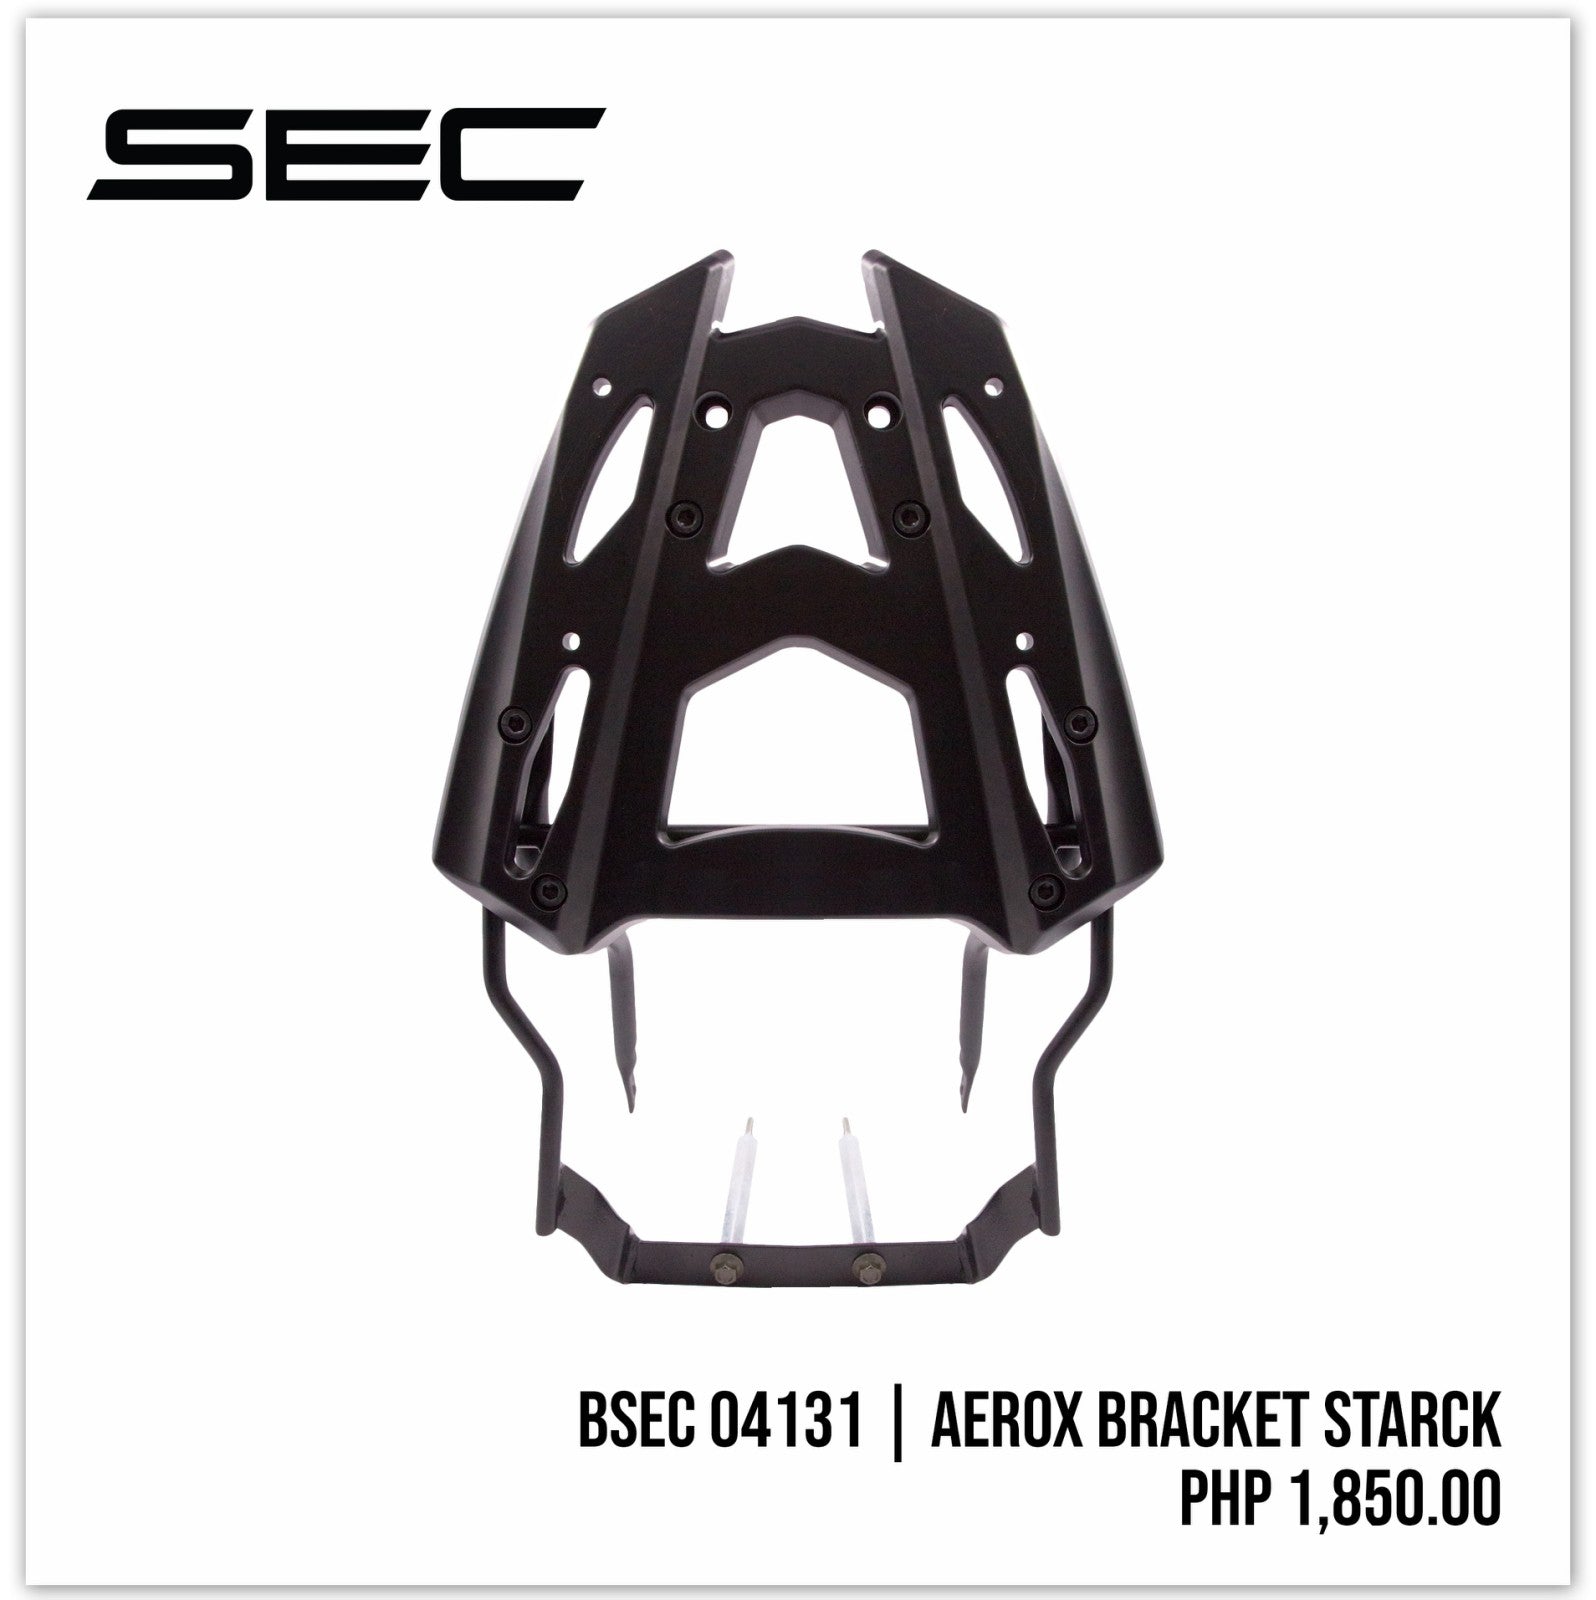 Aerox Bracket Starck